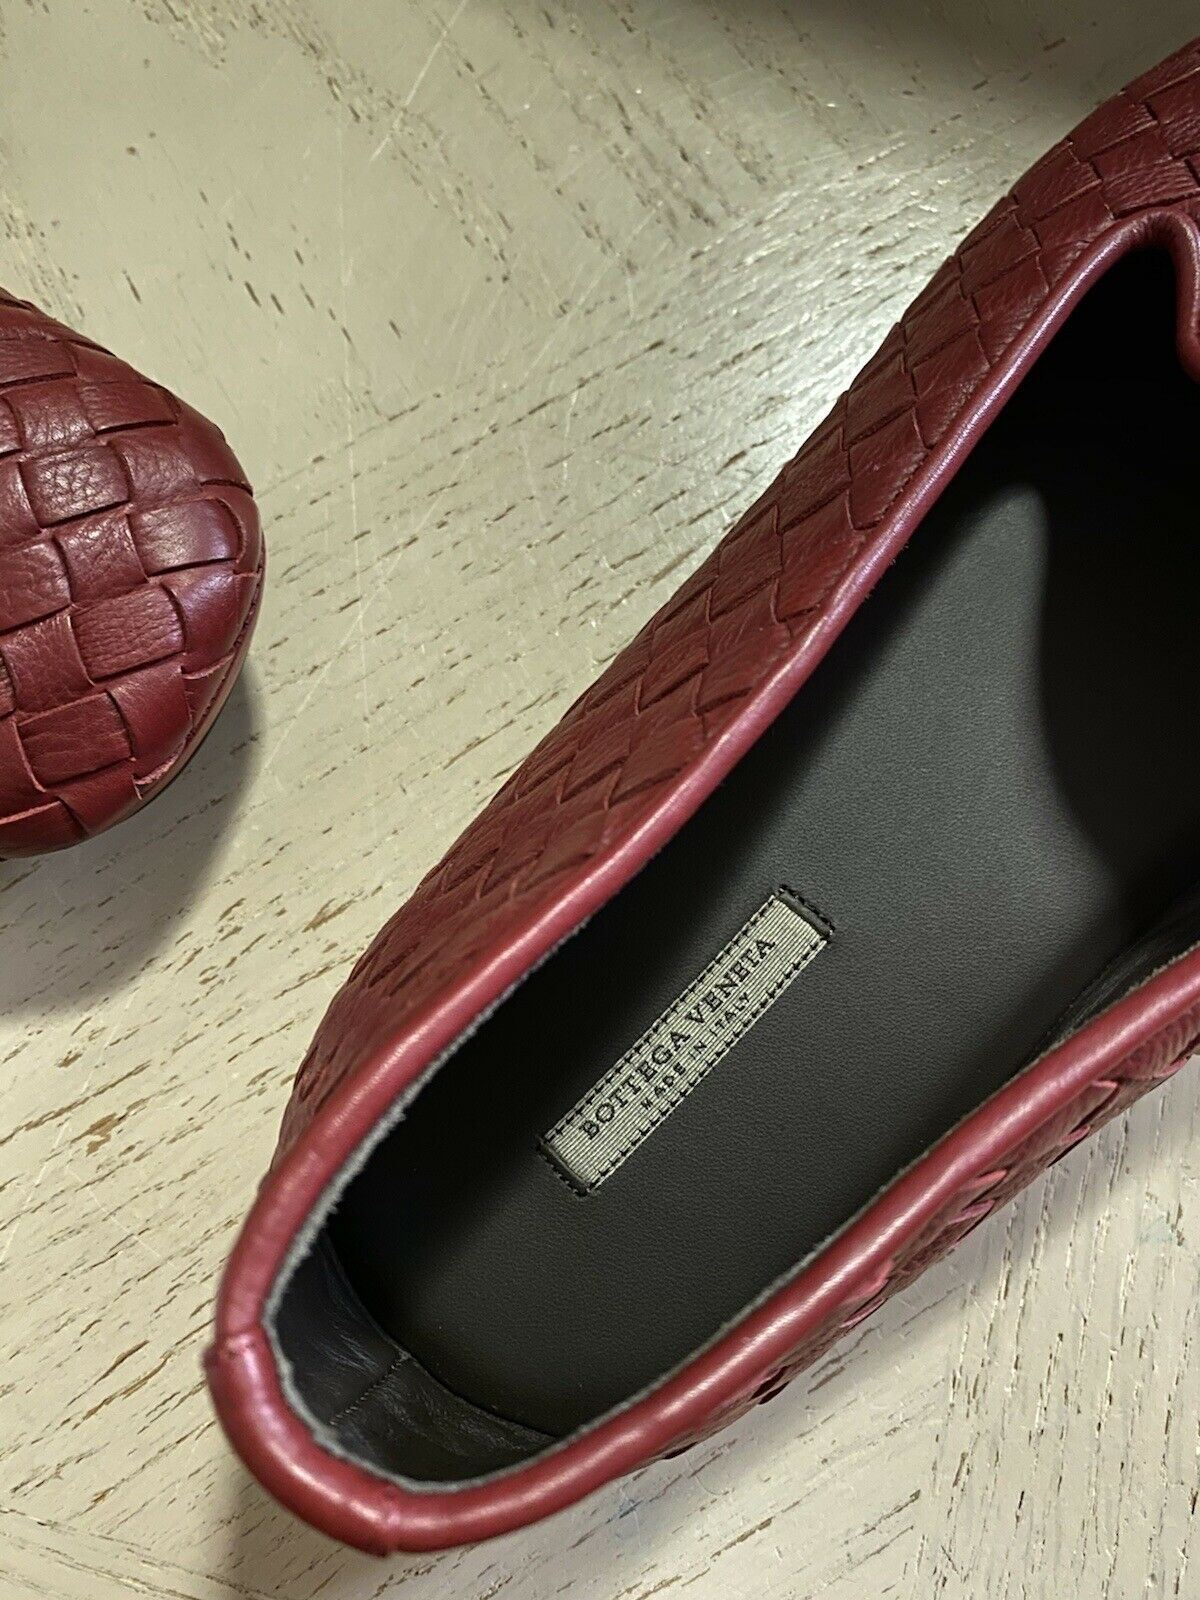 СИБ $810 Мужские кожаные лоферы Bottega Veneta бордовый/красный 8,5 США/41,5 ЕС